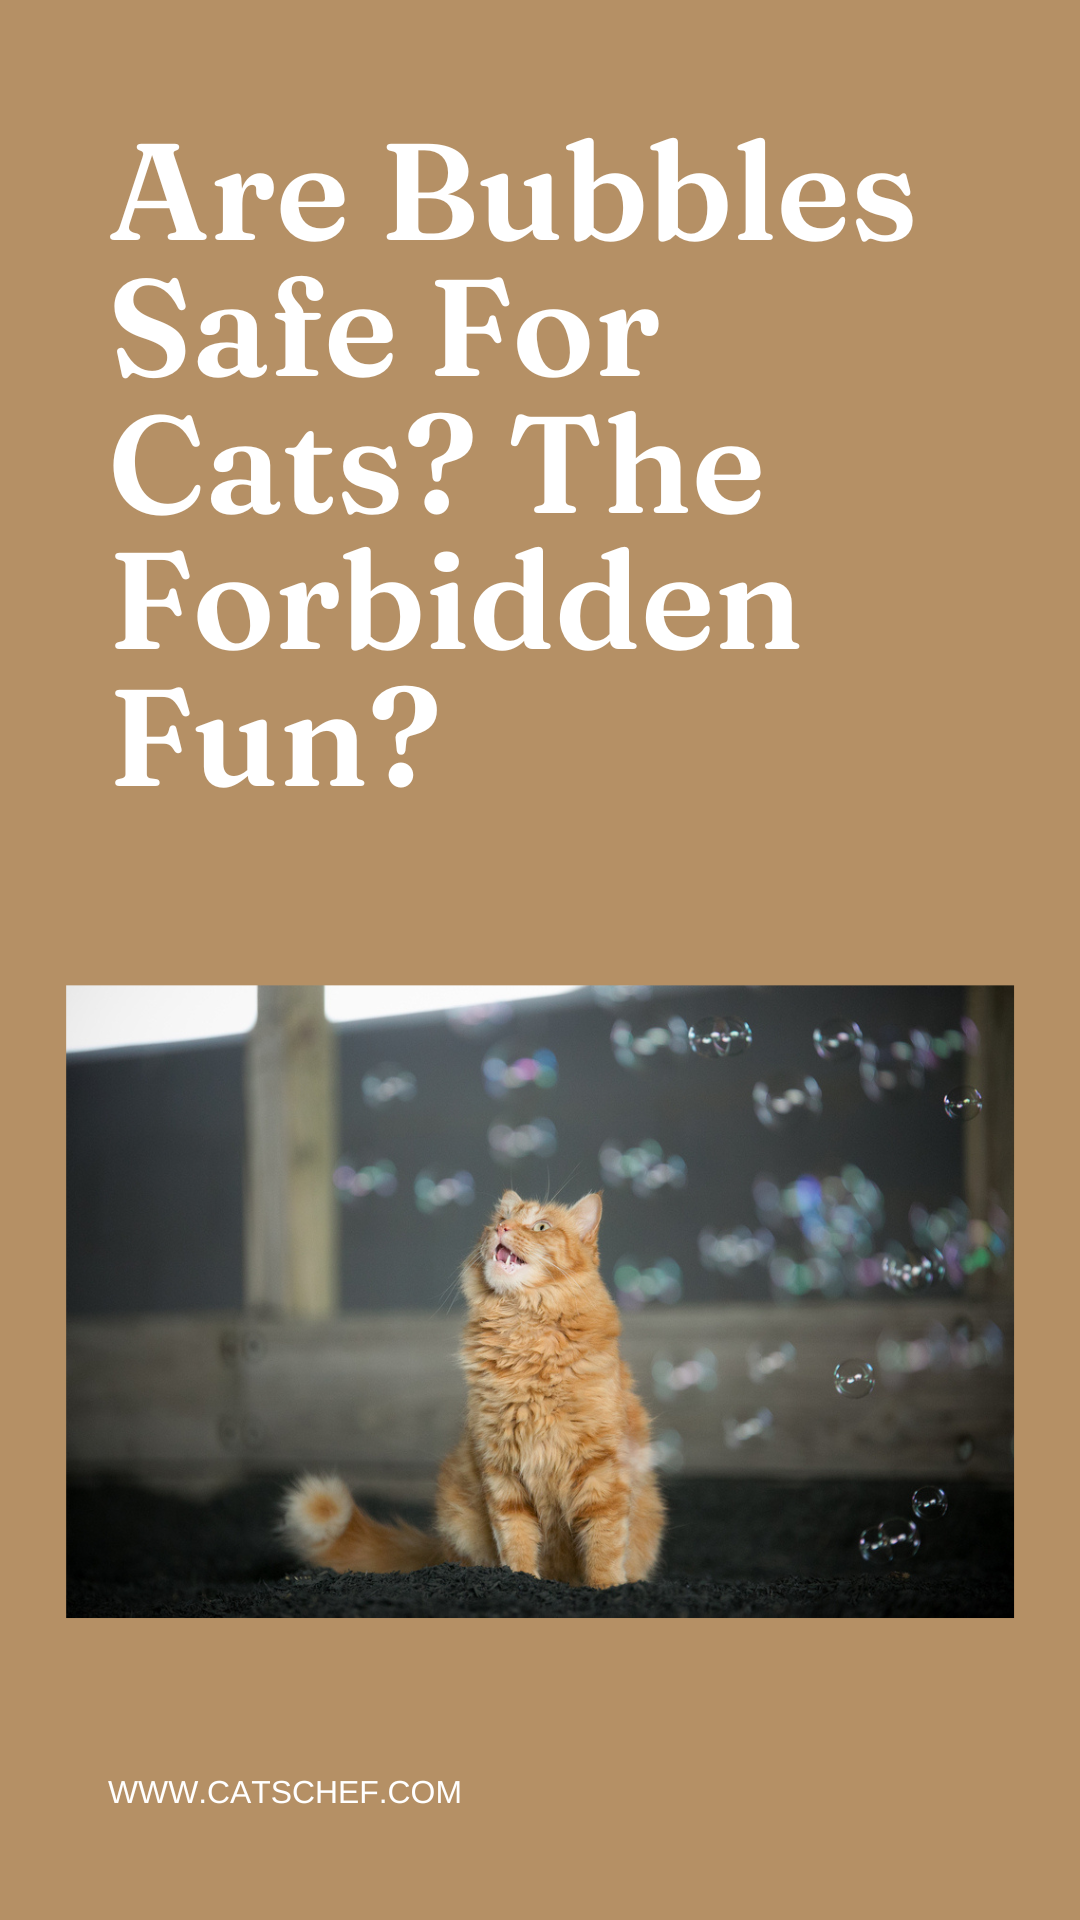 Baloncuklar Kediler İçin Güvenli mi? Yasak Eğlence mi?